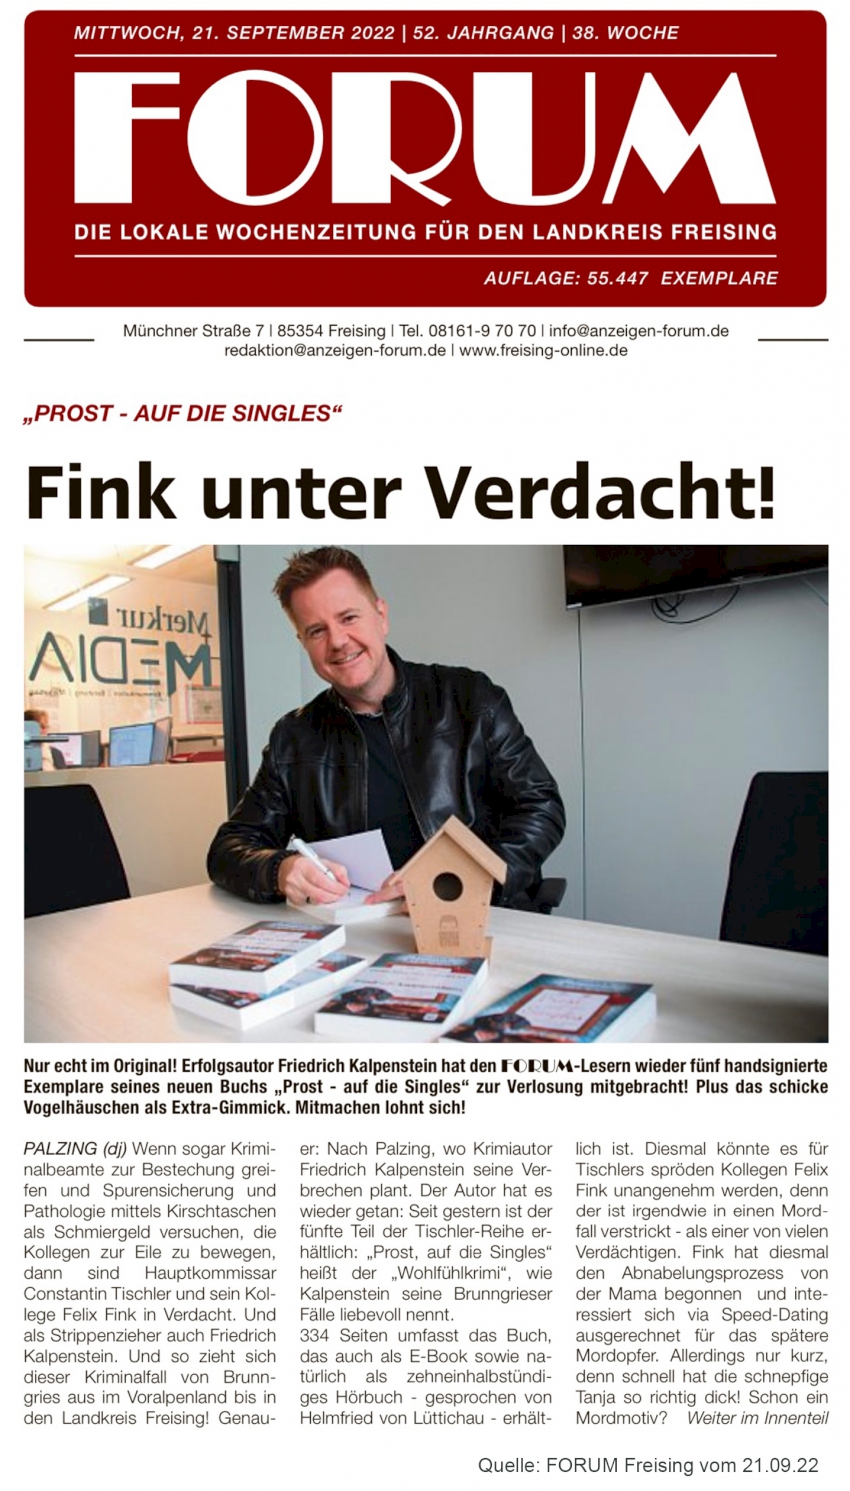 Titelseite des Forum Freising vom 21.09.22. Zu sehen ist Friedrich Kalpenstein beim Signieren eines Buches aus der Tischler-Reihe in der Freisinger Redaktion.